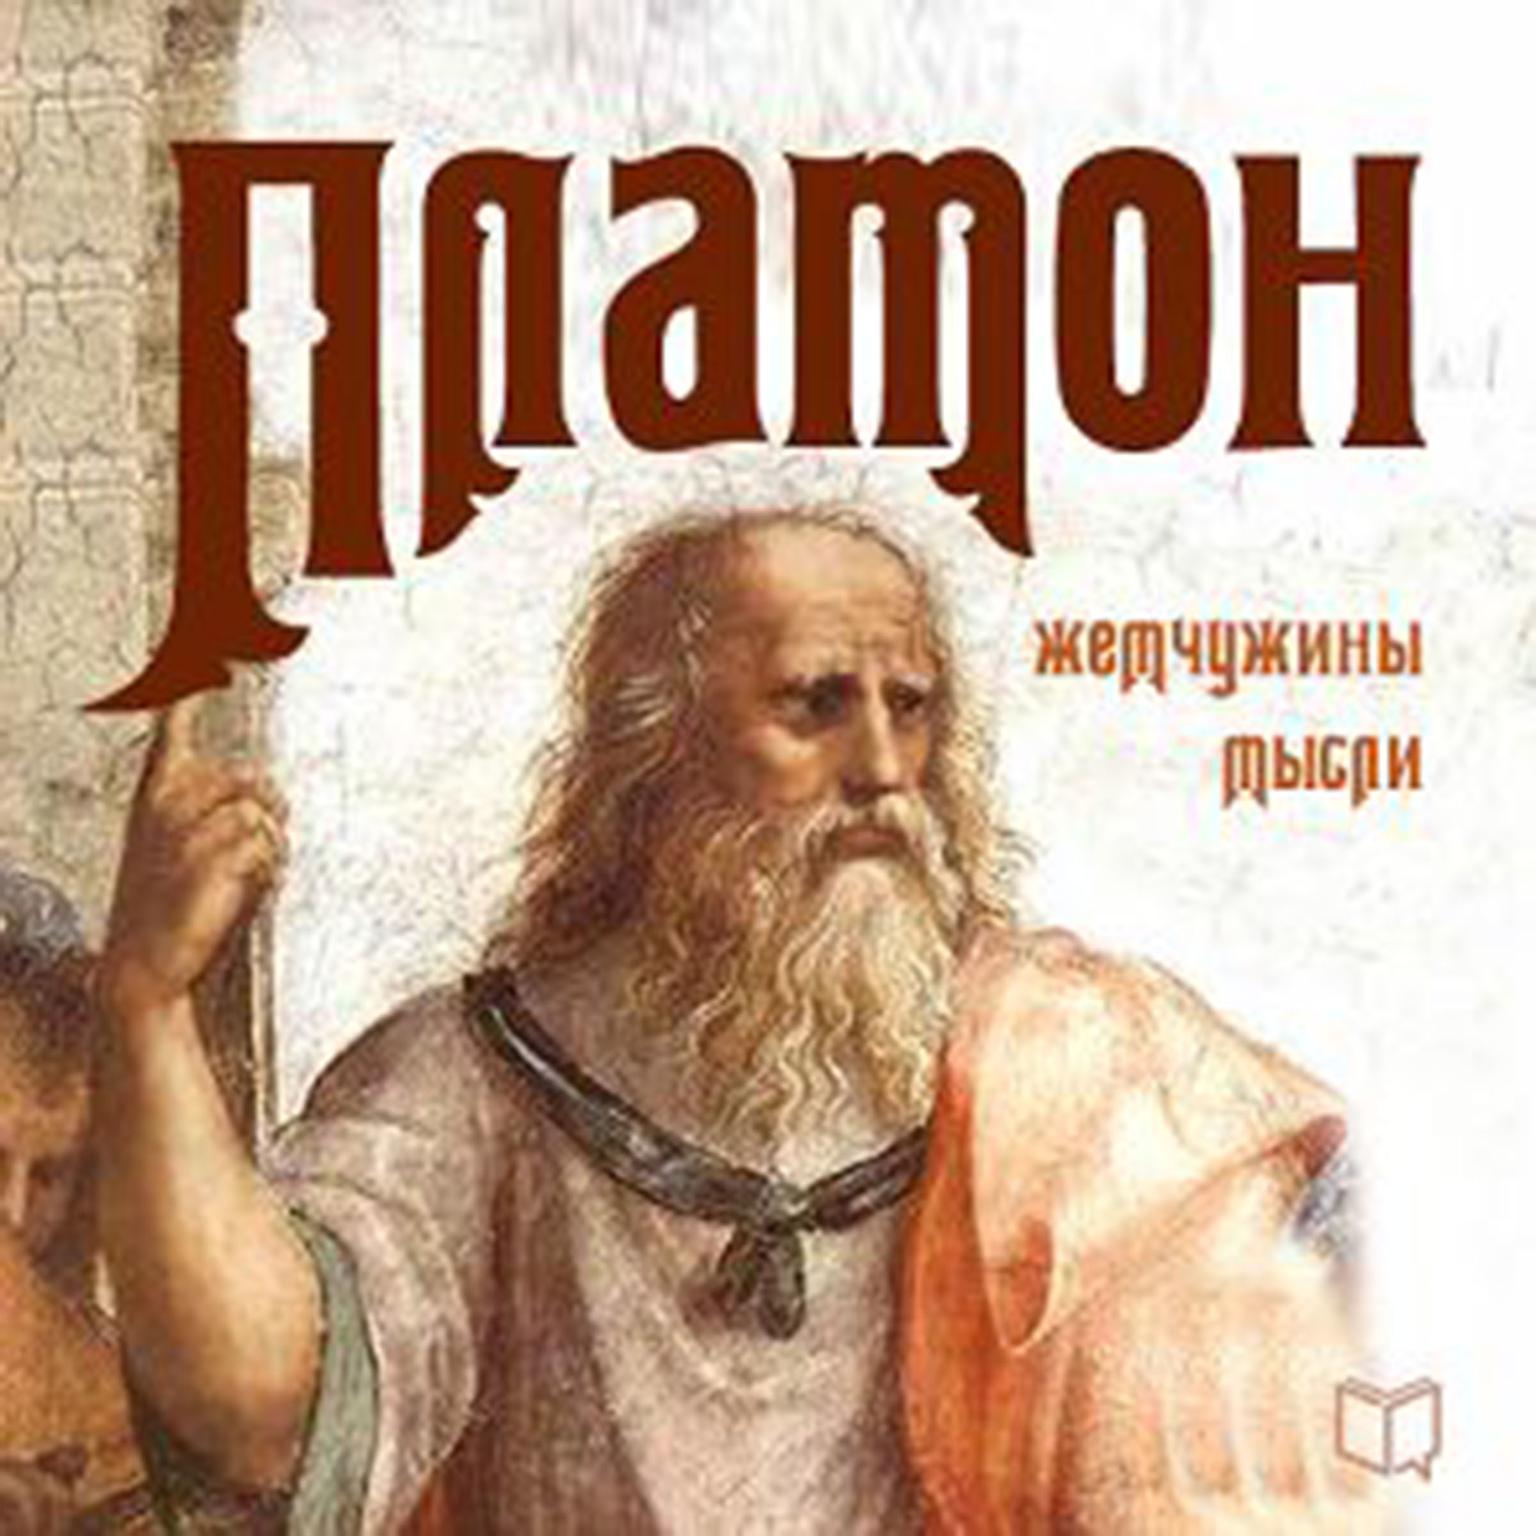 Plato: Pearls of Wisdom [Russian Edition] Audiobook, by Plato